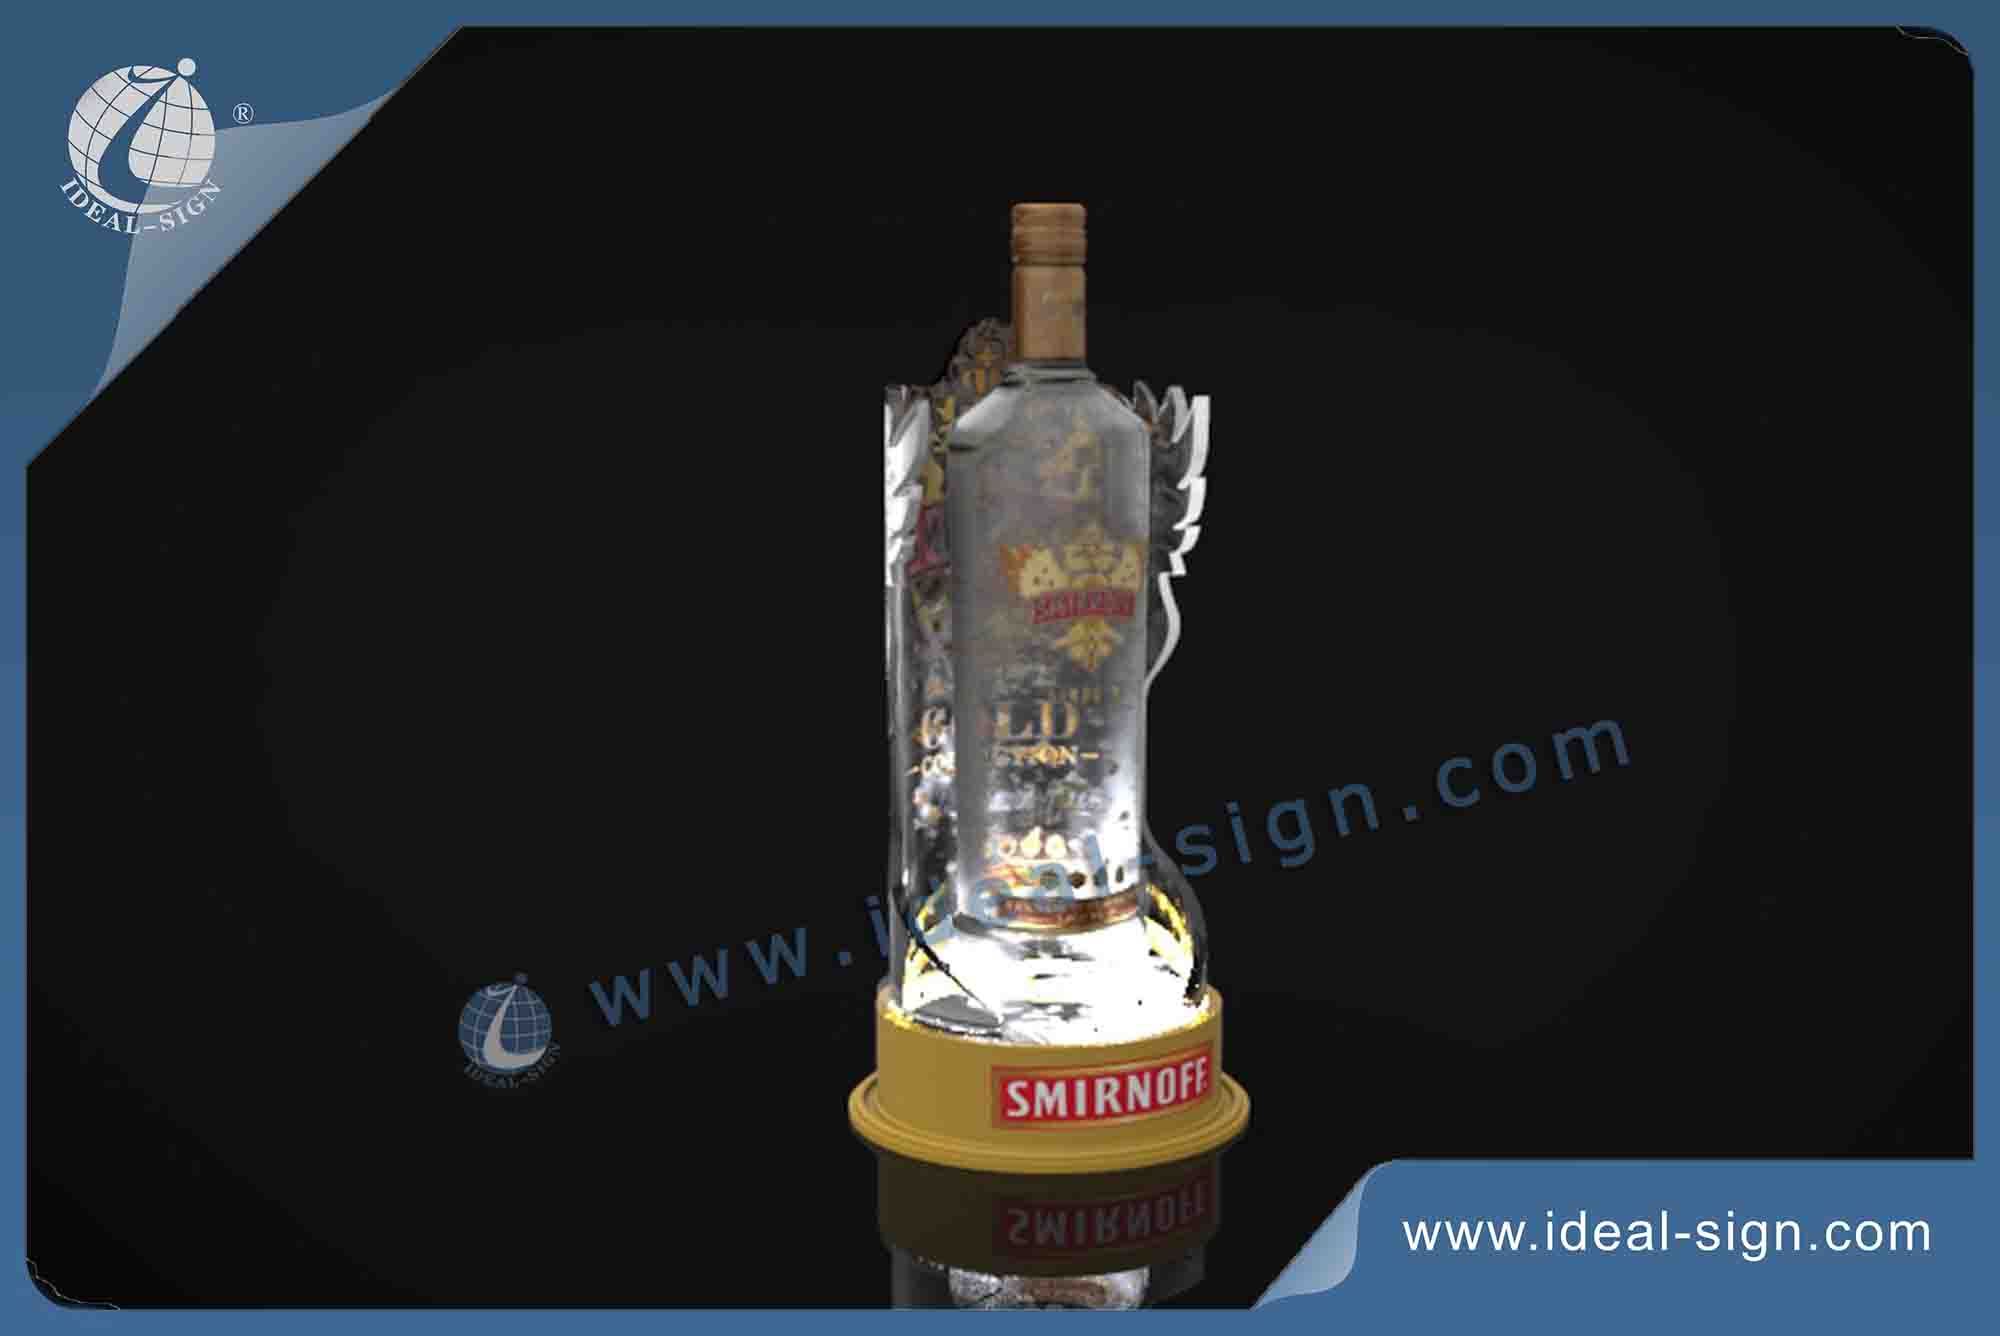 SMIRNOFF LED Acrylic Bottle Glorifier / Bottle Display Shelf